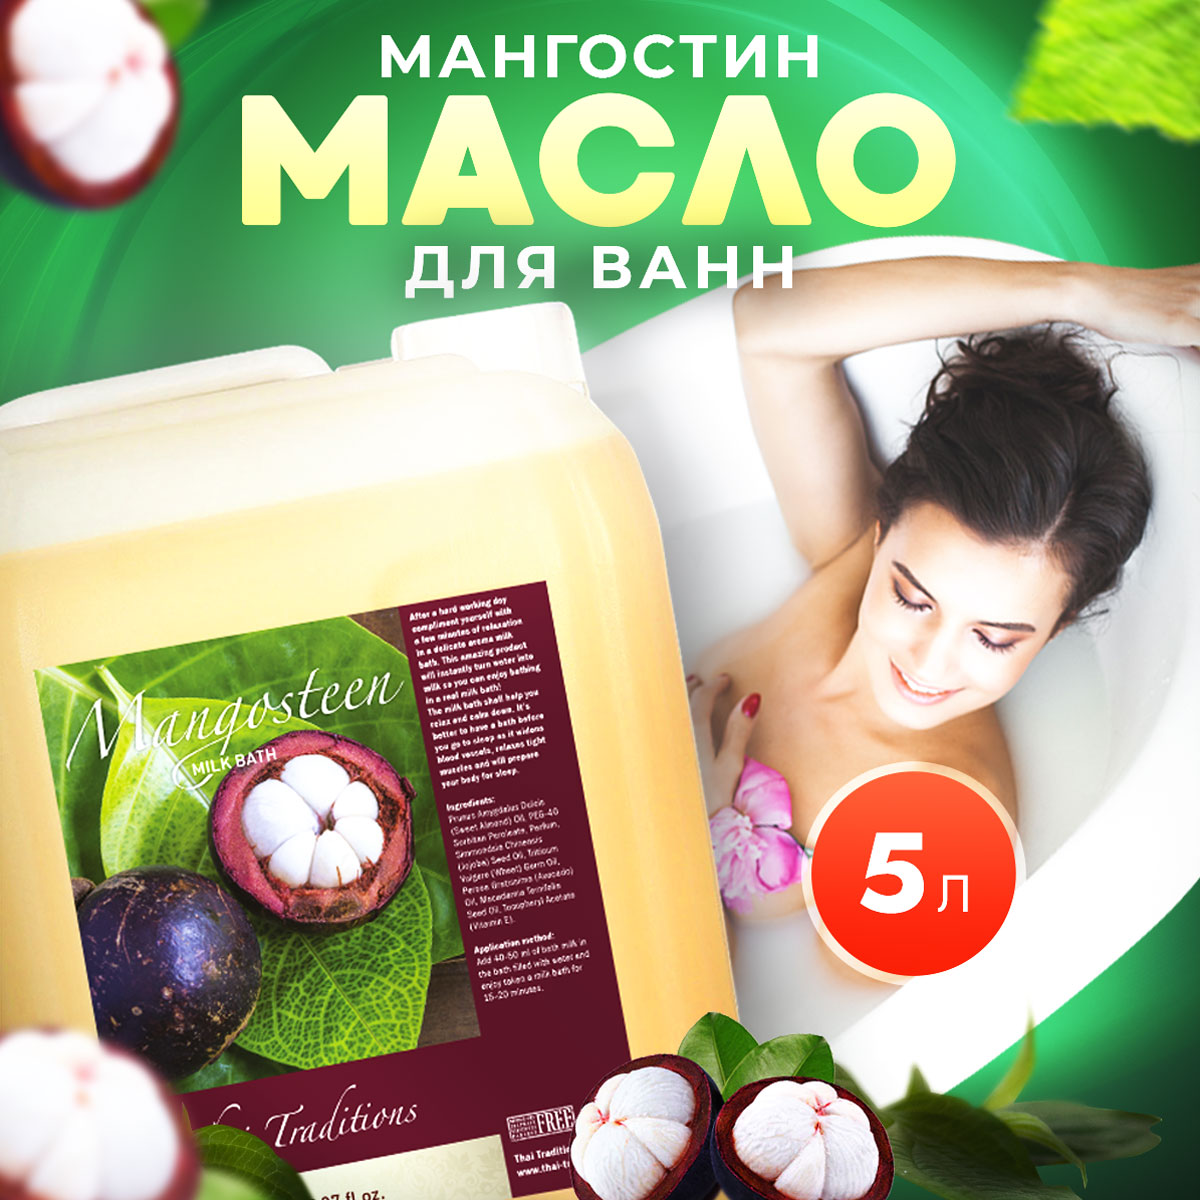 Масло для ванны и душа Thai Traditions натуральное гидрофильное увлажняющее Мангостин 5 л mipassioncorp шиммер для ванны розовый кристалл 600